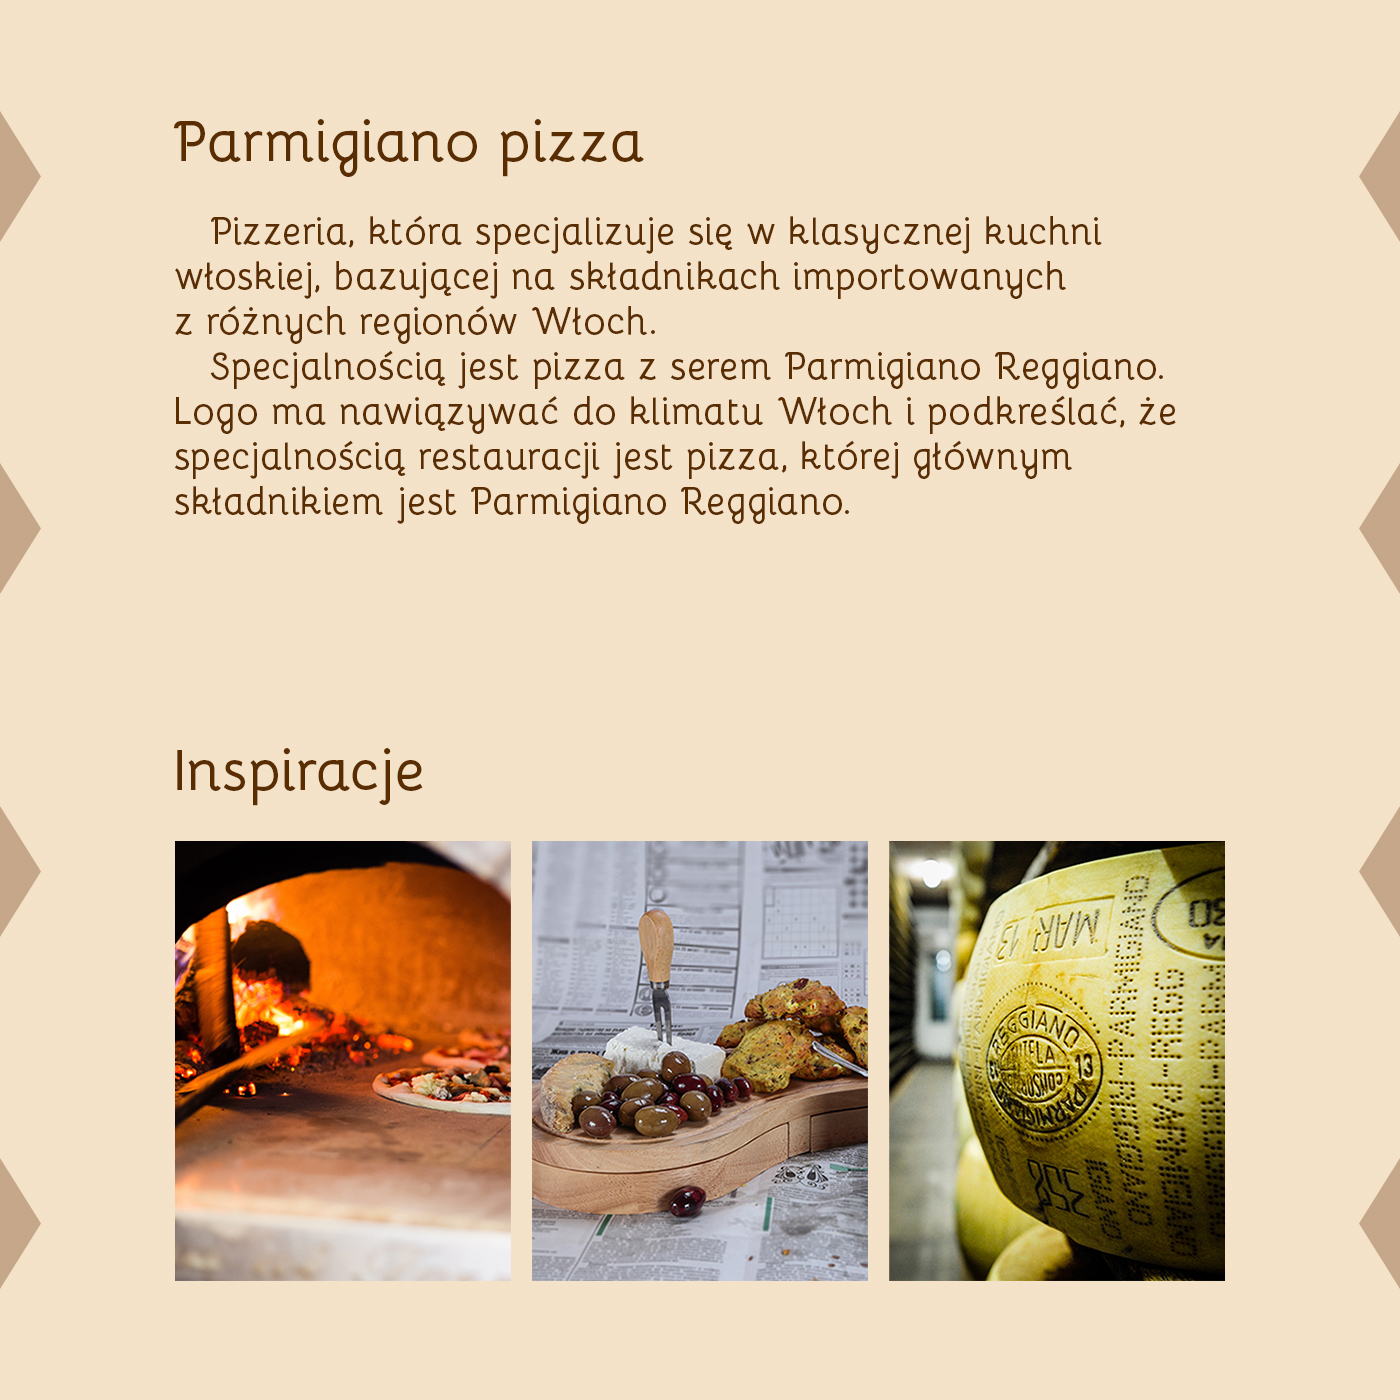 pizza restauracja identyfikacja wizualna inspiracja 